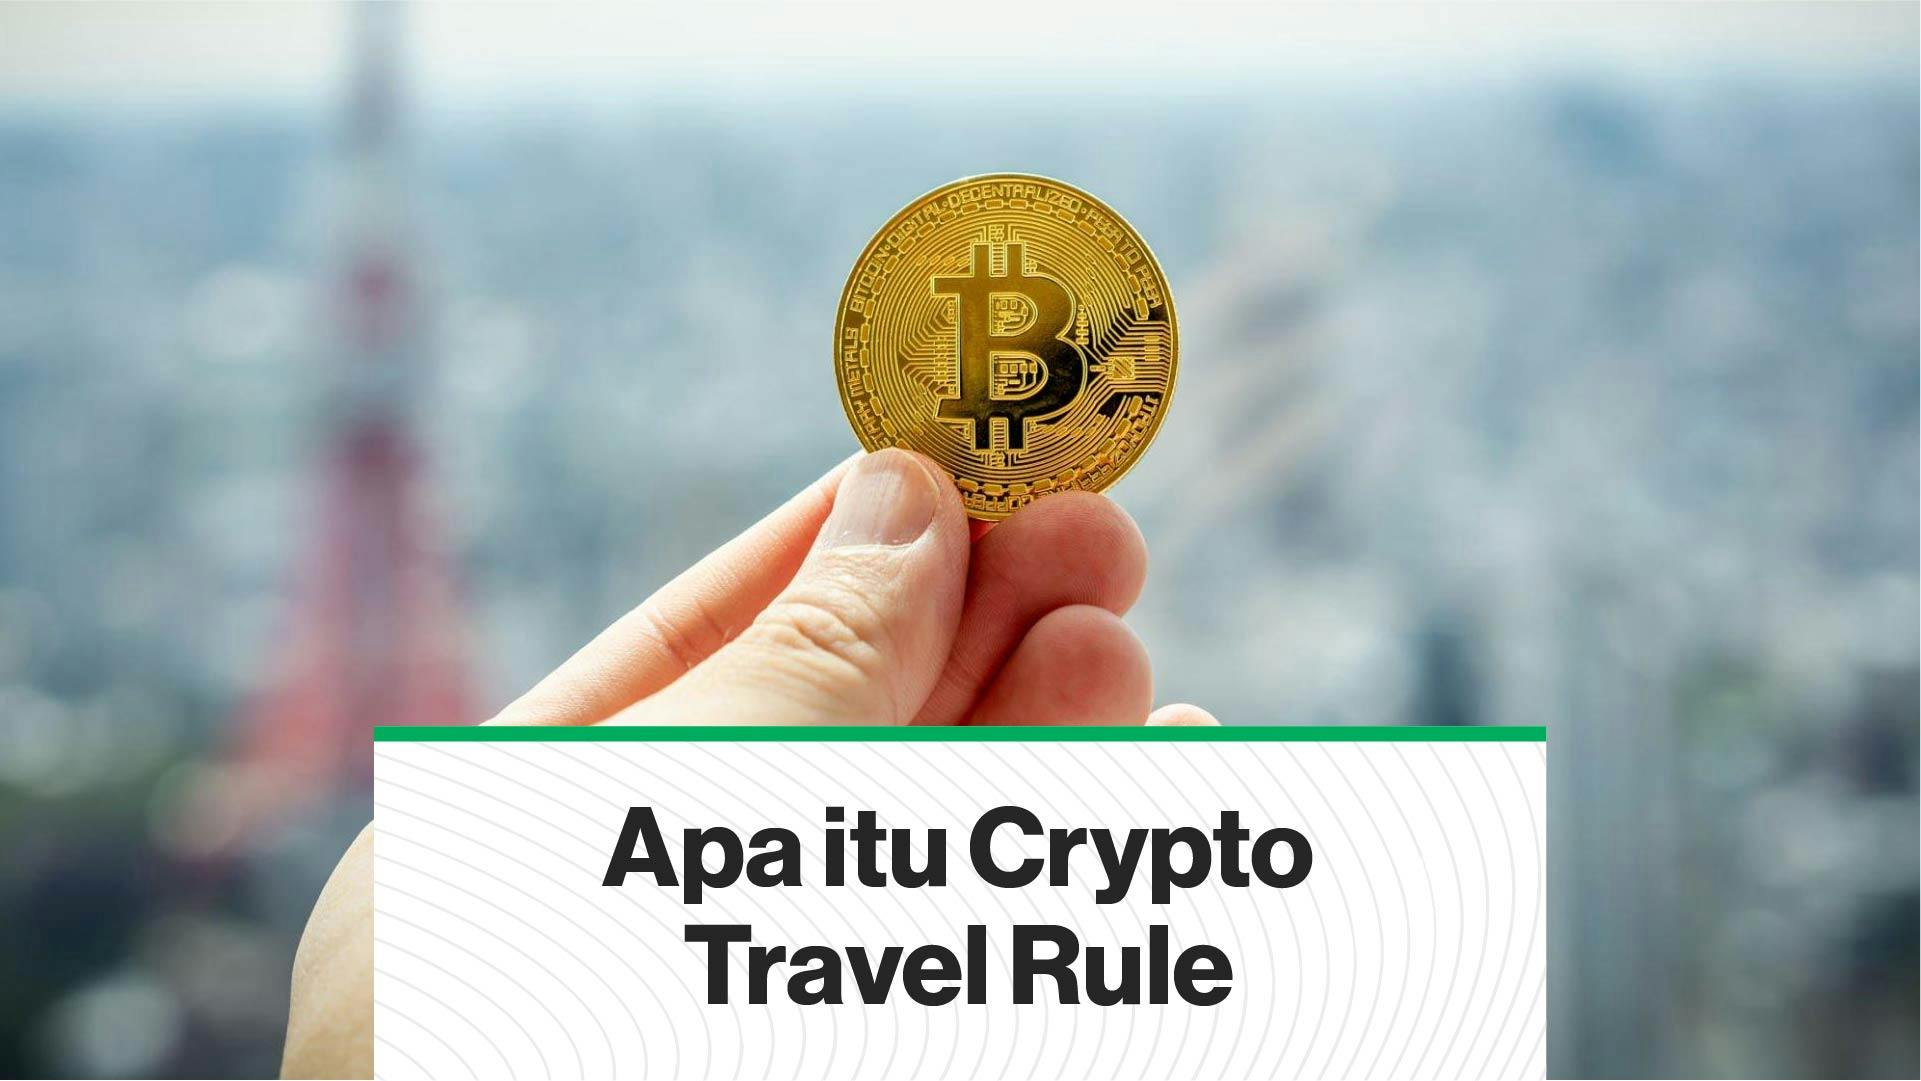 Apa itu Crypto Travel Rule (Coindesk Indonesia)